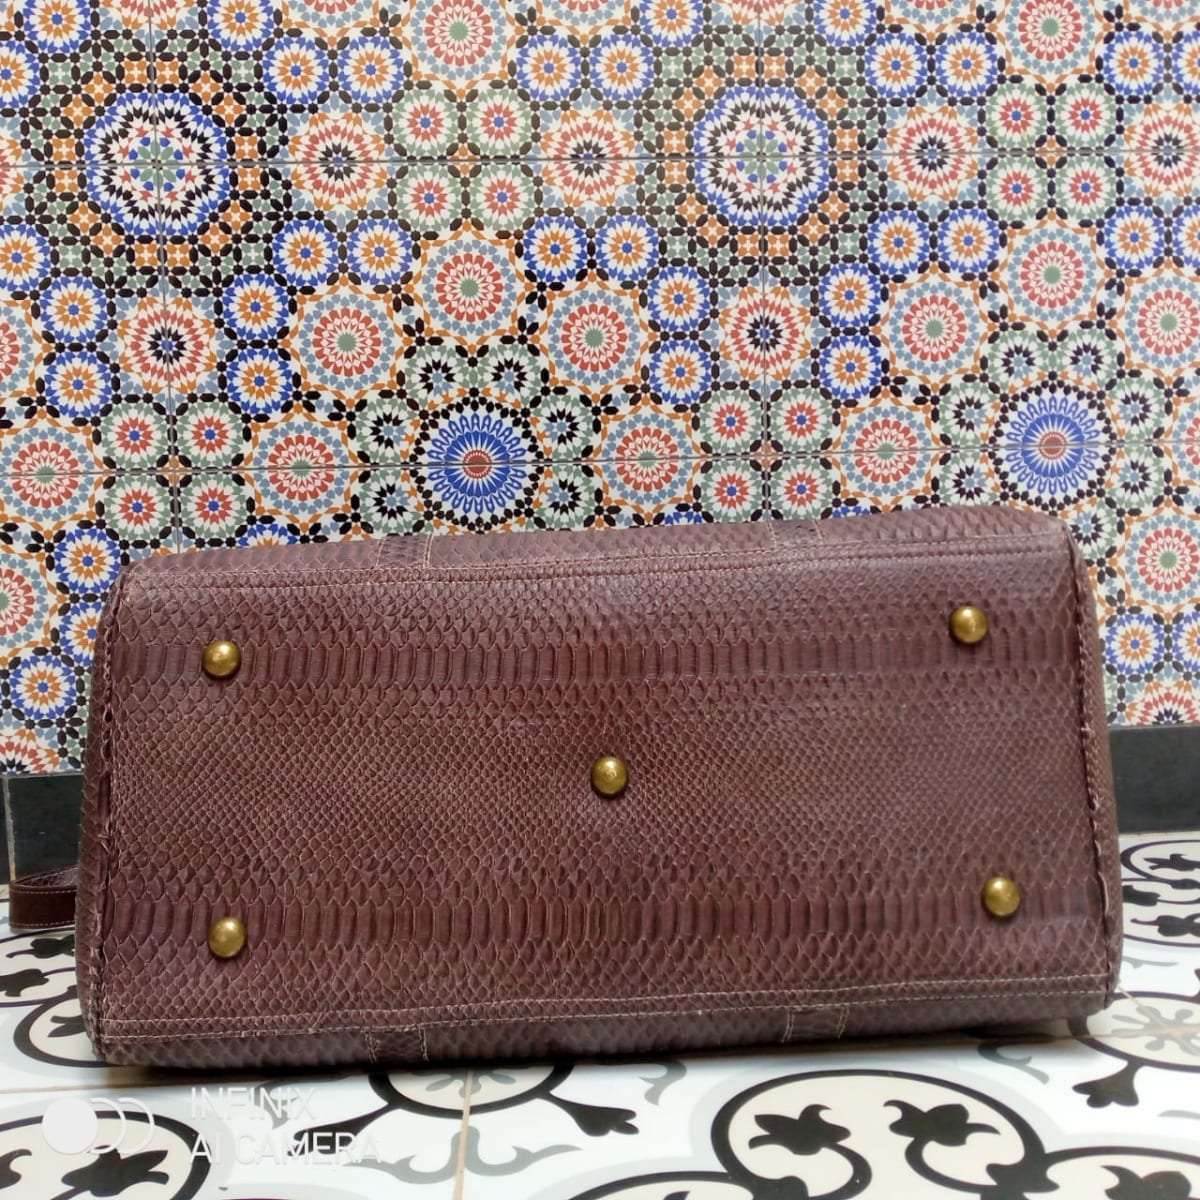  bag leather Brown Morocco